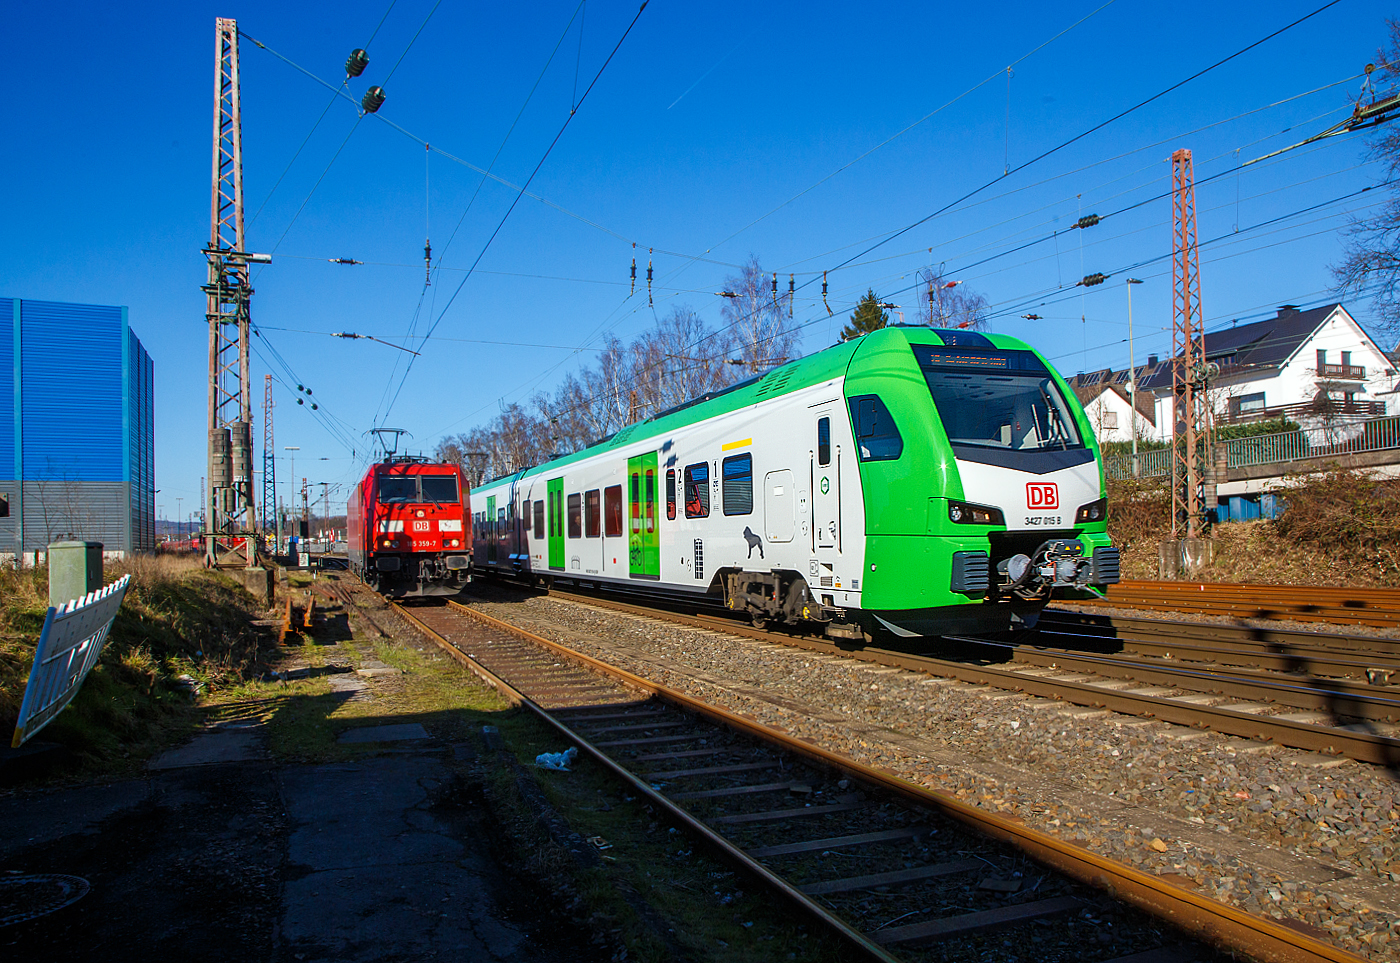 Während links auf dem Stumpfgleis die 185 359-7 der DB Cargo AG wartet, rauscht rechts der für die DB Regio AG – NRW fahrende dreiteilige Stadler FLIRT 3 XL 3427 015 (94 80 3427 015-7 D-STAP /  94 80 3827 015-3 D-STAP / 94 80 3427 515-6 D-STAP) der ZV VRR Eigenbetrieb Fahrzeuge und Infrastruktur, als RE 34 „Dortmund-Siegerland-Express“ (Dortmund - Letmathe - Siegen), von Kreuztal weiter in Richtung Siegen.

Der Stadler FLIRT 3 XL wurde 2020 von der Stadler Pankow GmbH in Berlin unter den Fabriknummern 42359 bis 42361 gebaut und an den Zweckverband Verkehrsverbund Rhein-Ruhr Eigenbetrieb Fahrzeuge und Infrastruktur geliefert. Eigentlich war dieser FLIRT 3 XL wie 9 weitere für die Bedienung der Regiobahnstrecke S 28 Kaarst - Neuss - Düsseldorf - Mettmann - Wuppertal vorgesehen, wo die Elektrifizierung bis 2020 erfolgen sollte. Da aufgrund von Verzögerungen der elektrische Betrieb voraussichtlich erst 2026 aufgenommen werden kann, wurden die inzwischen gelieferten Triebwagen u. a. von der DB Regio AG NRW eingesetzt.